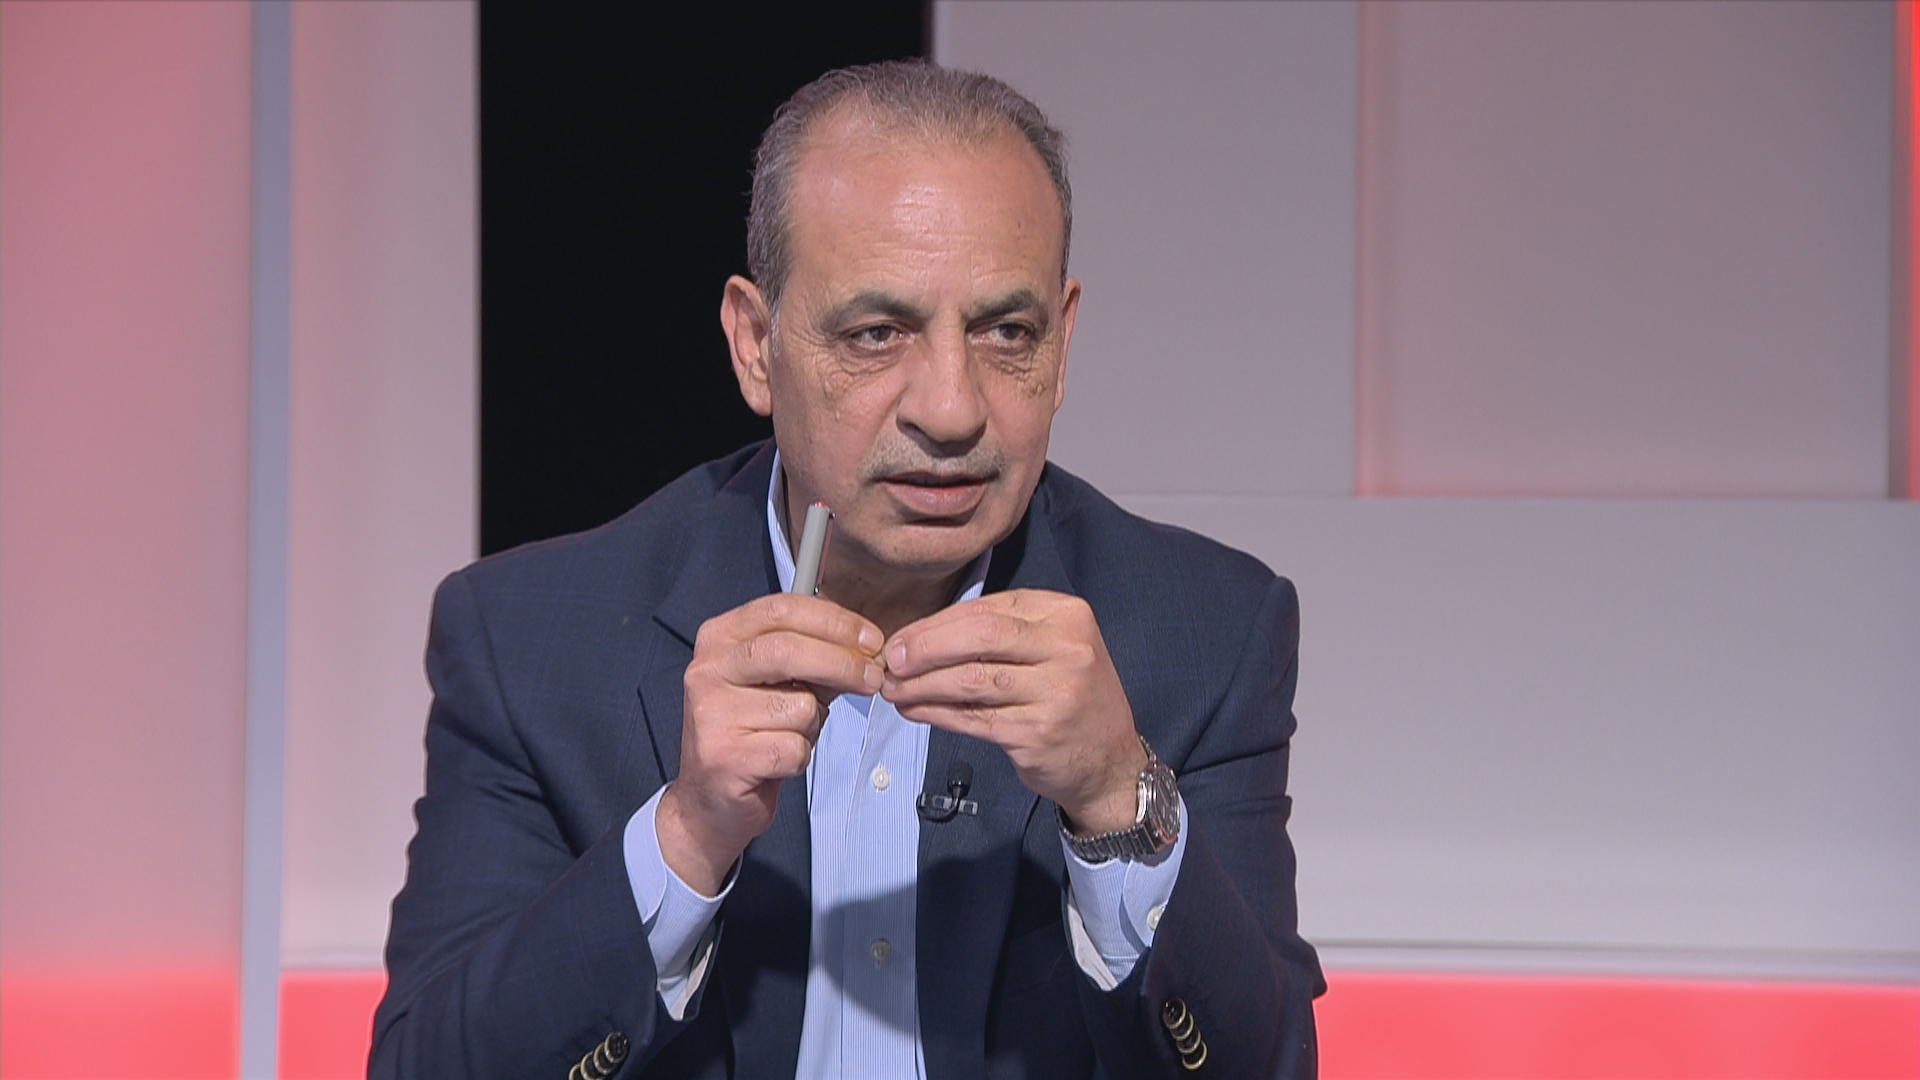 وزير الإدارة المحلية وليد المصري خلال استضافة في برنامج "صوت المملكة". (المملكة)